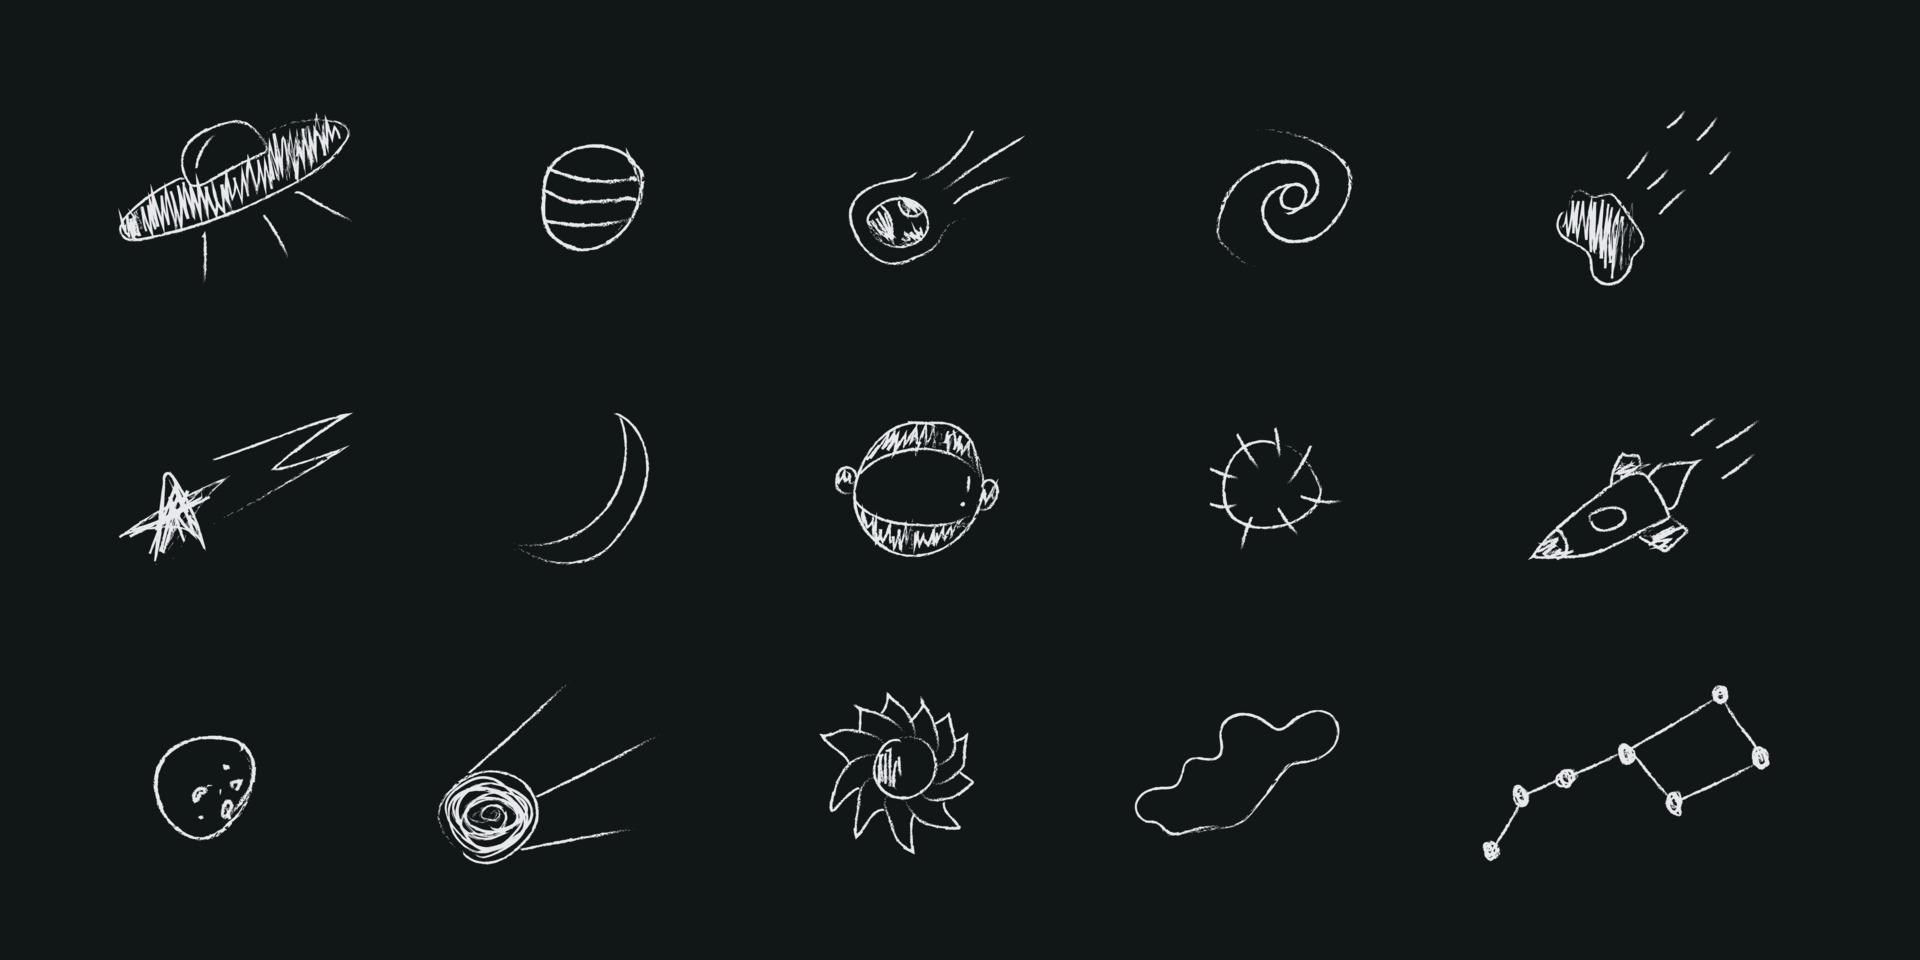 Doodle-Kosmos-Illustration im kindlichen Stil, Design-Clipart. handgezeichnete abstrakte raumelemente mit beschriftung. Schwarz und weiß. vektor